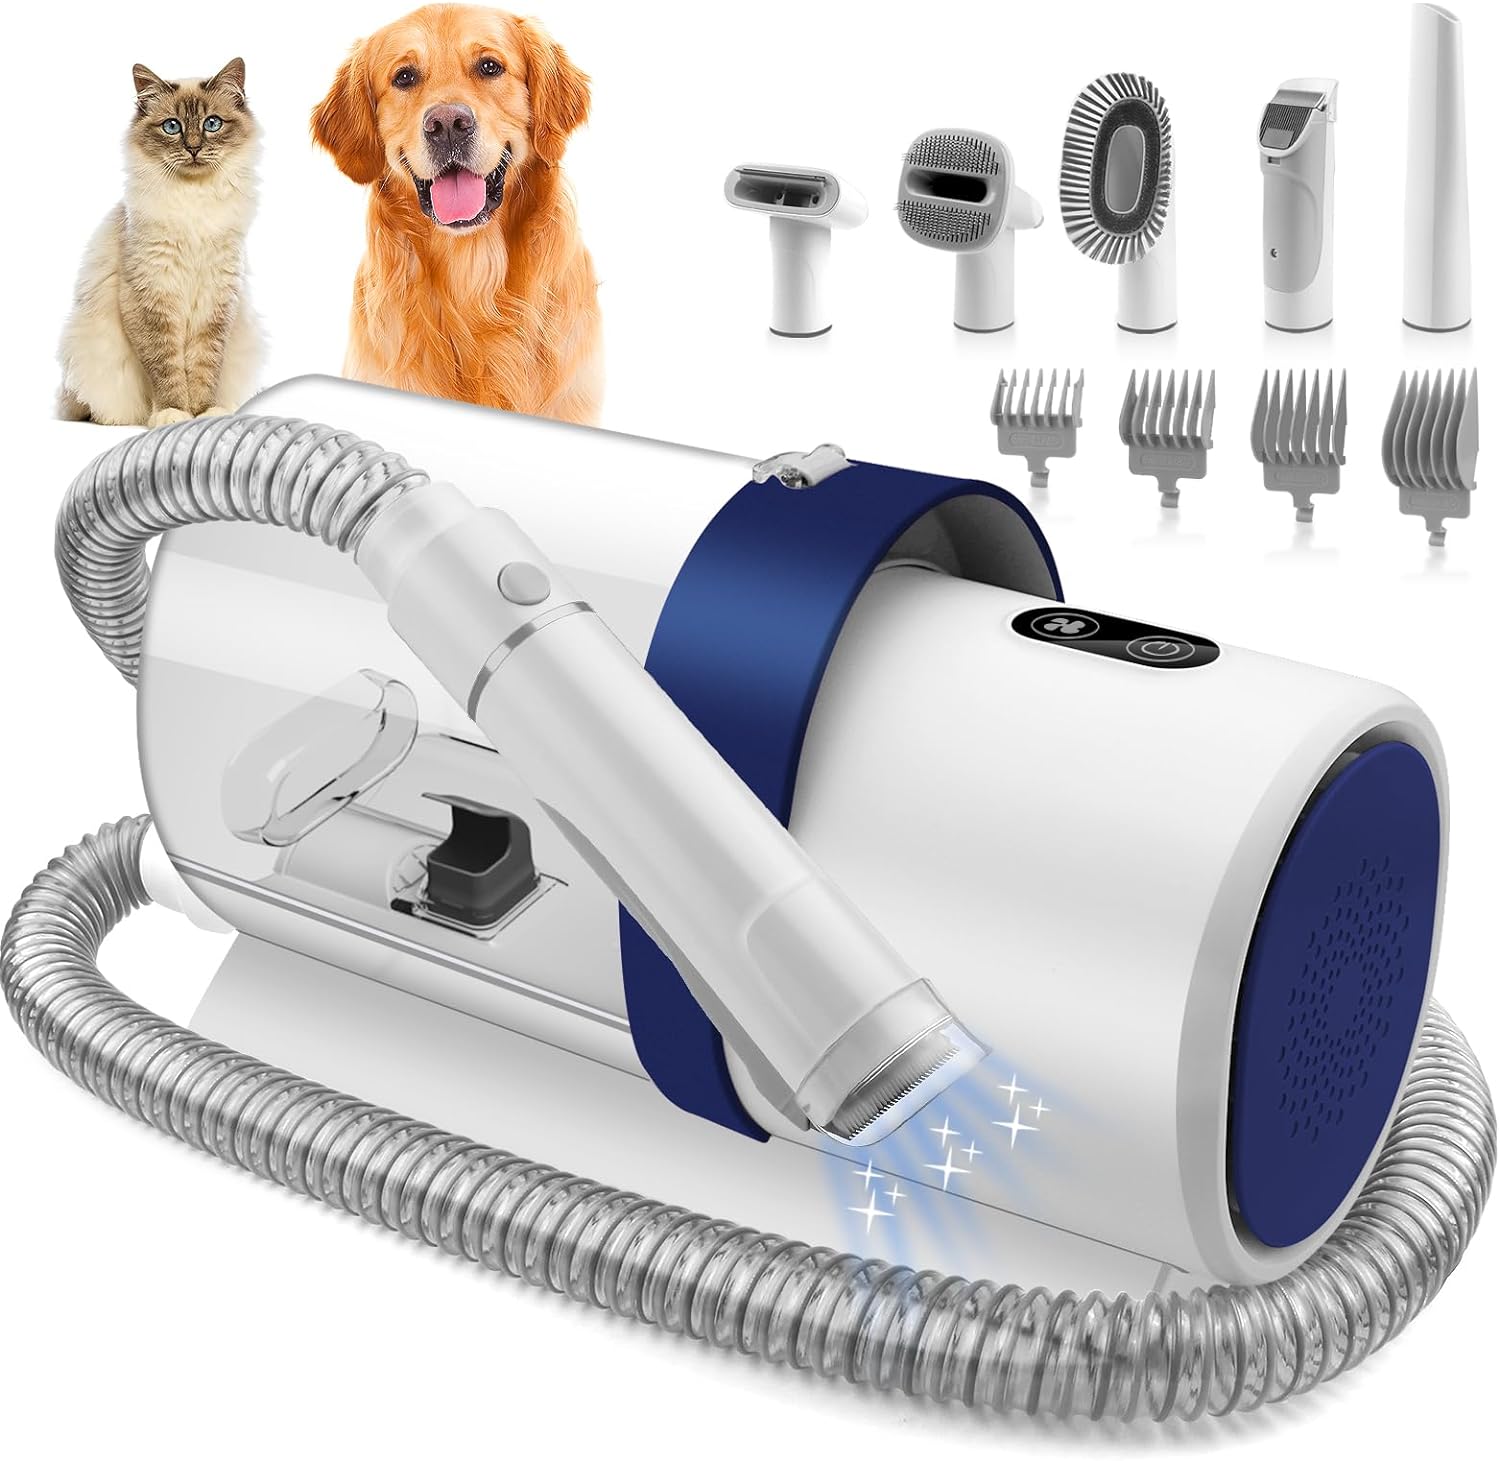 Pet grooming kit